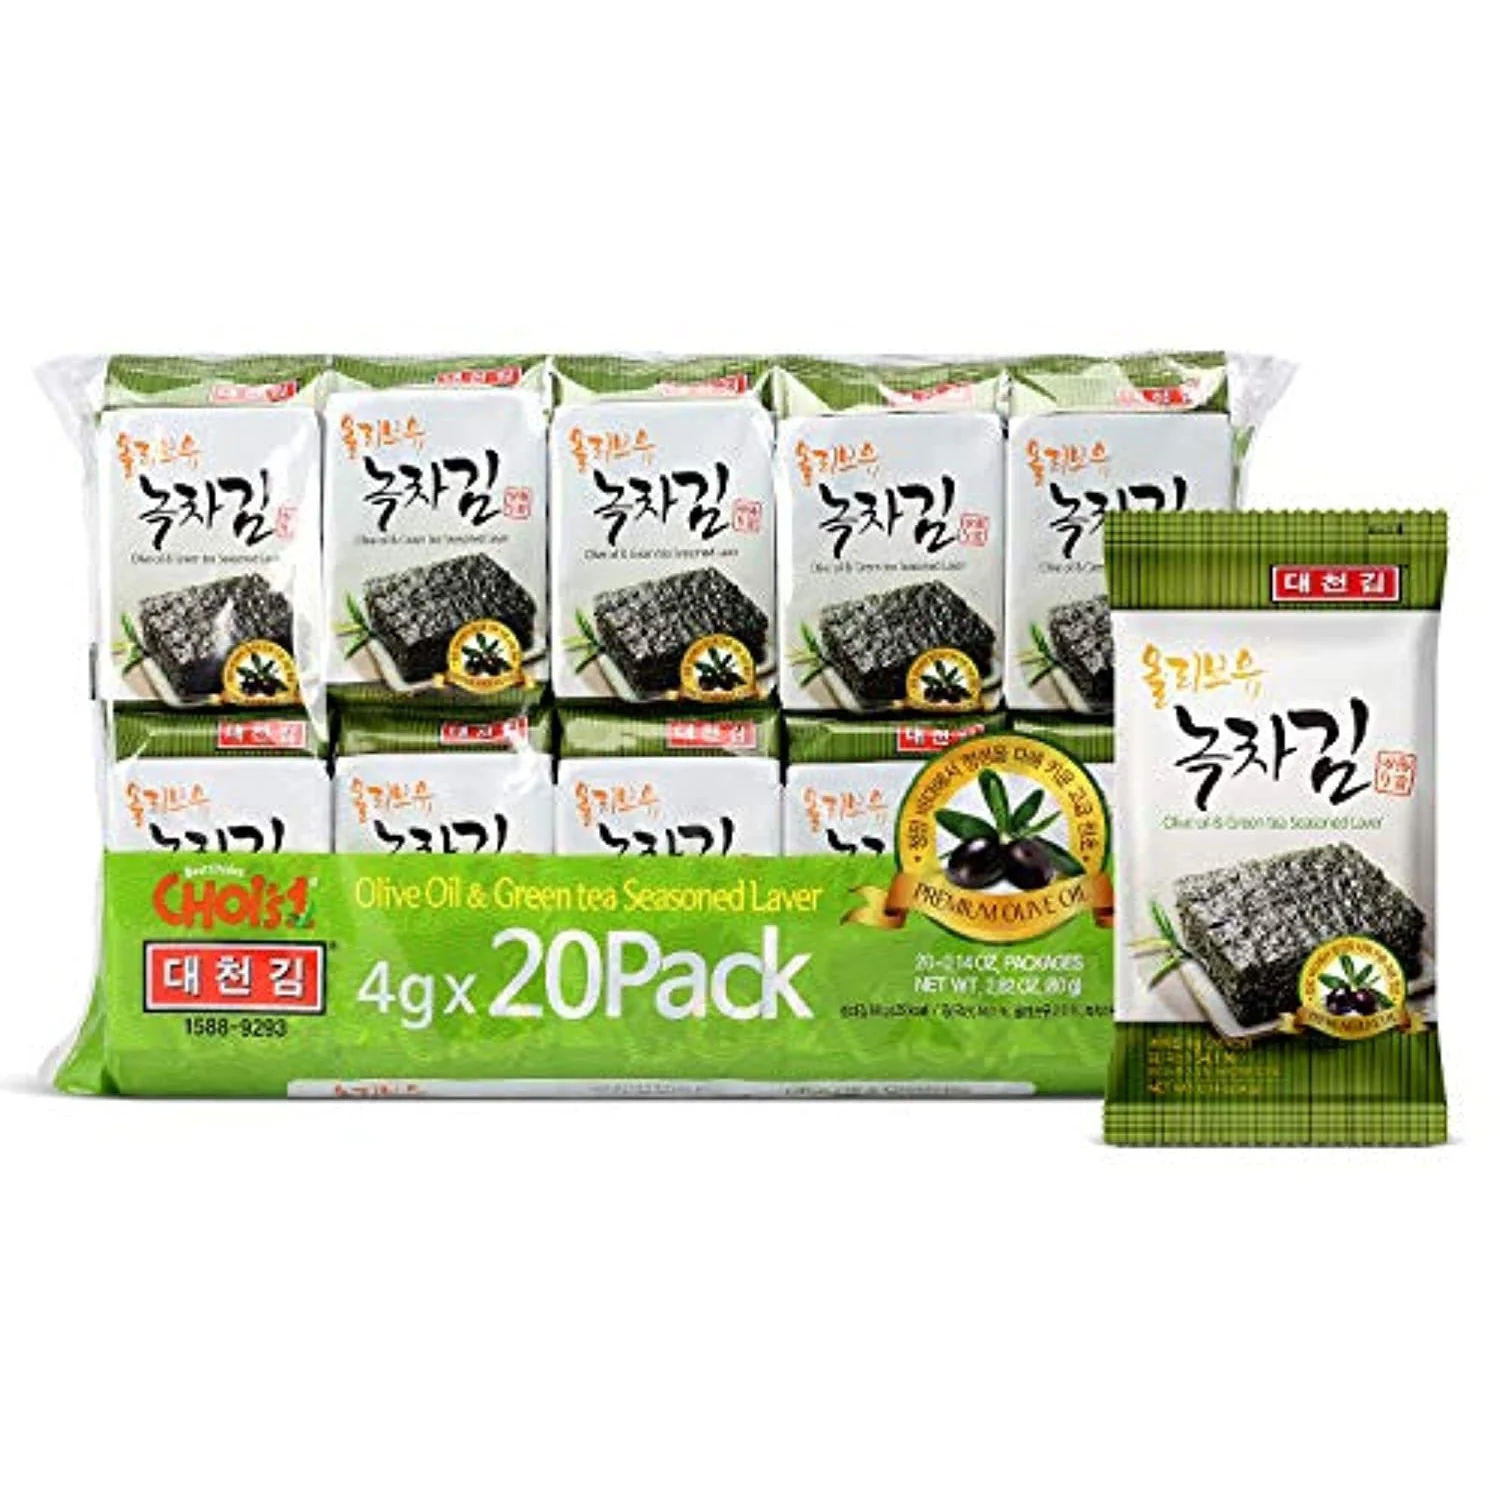 DAECHUN Olive Oil Seaweed Snacks, Pack of 20